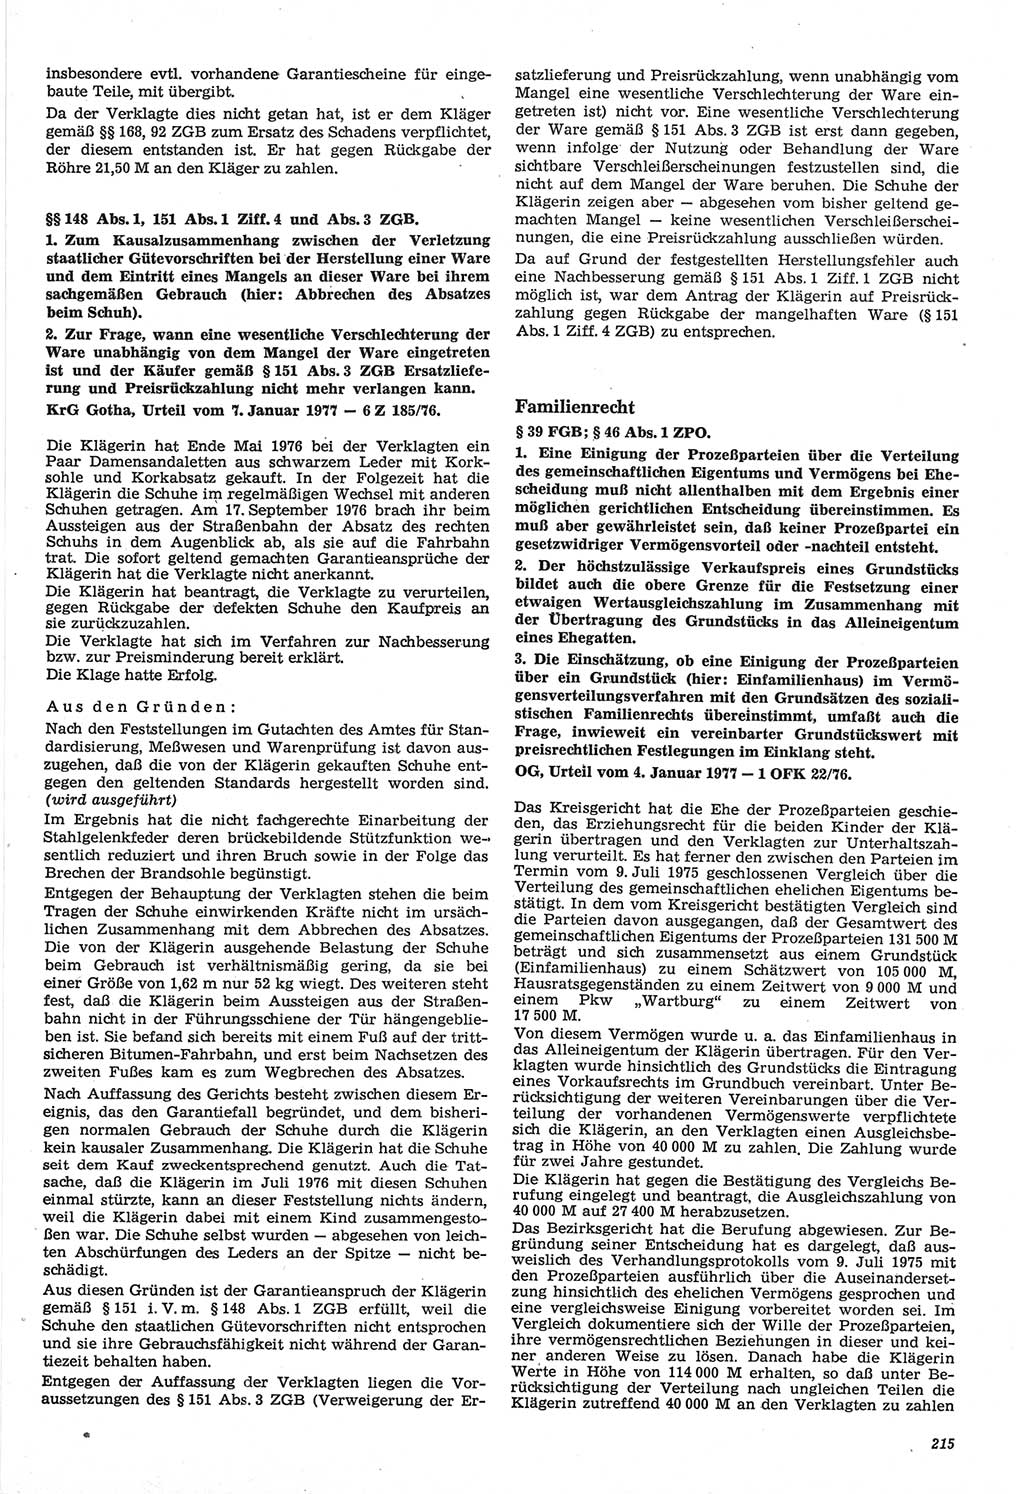 Neue Justiz (NJ), Zeitschrift für Recht und Rechtswissenschaft-Zeitschrift, sozialistisches Recht und Gesetzlichkeit, 31. Jahrgang 1977, Seite 215 (NJ DDR 1977, S. 215)